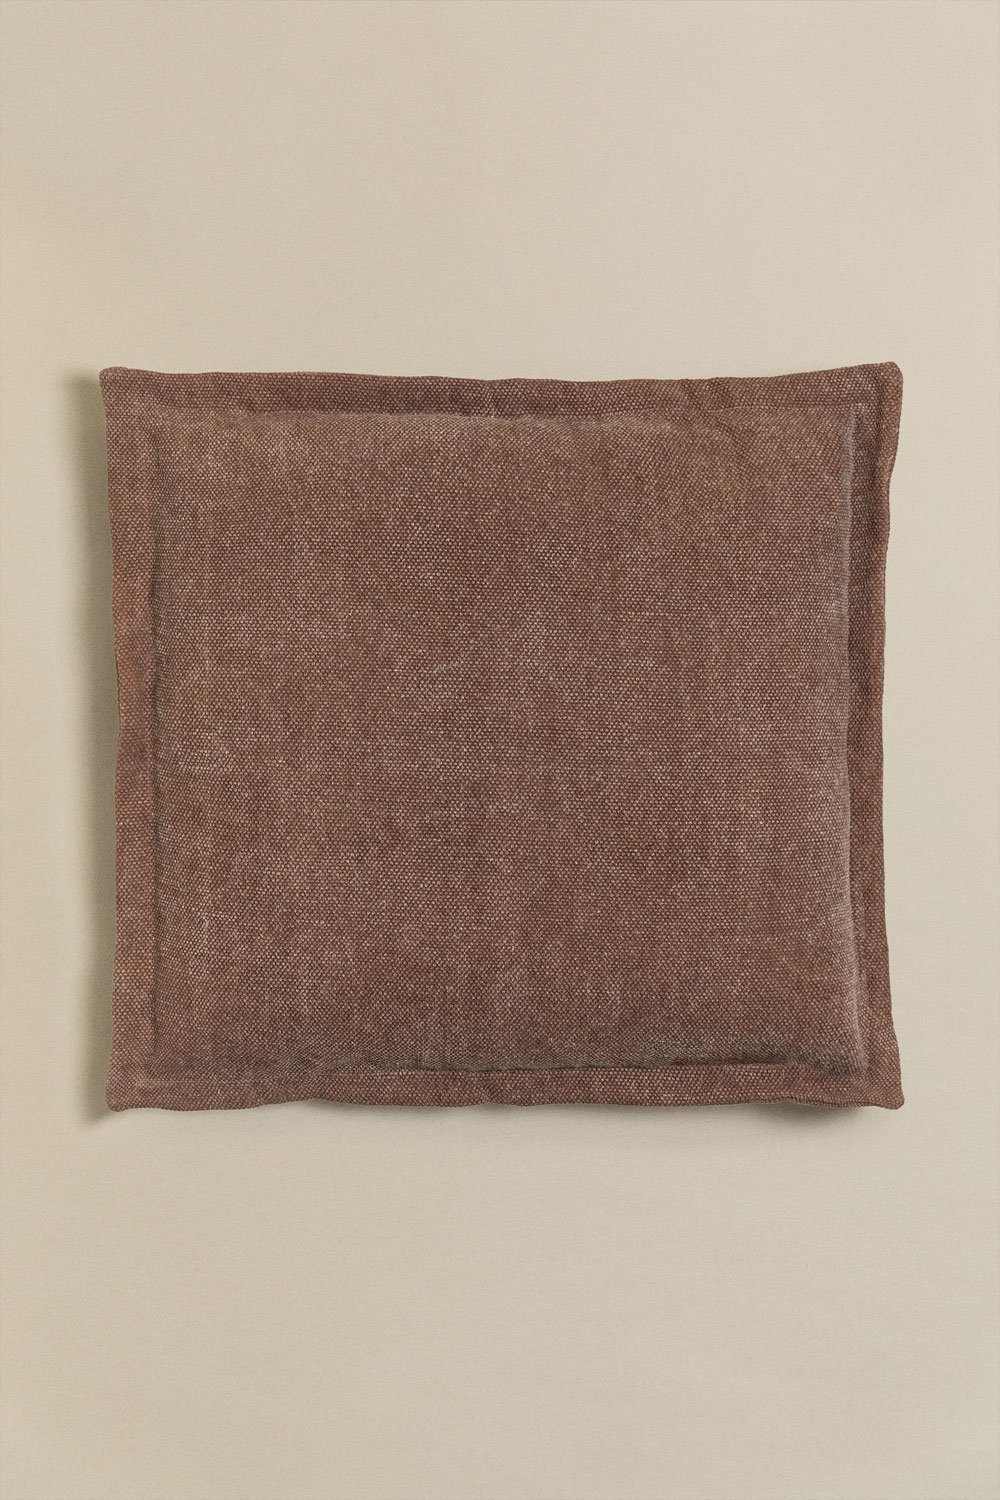 Coussin carré en coton (60x60 cm) Karzem, image de la galerie 1